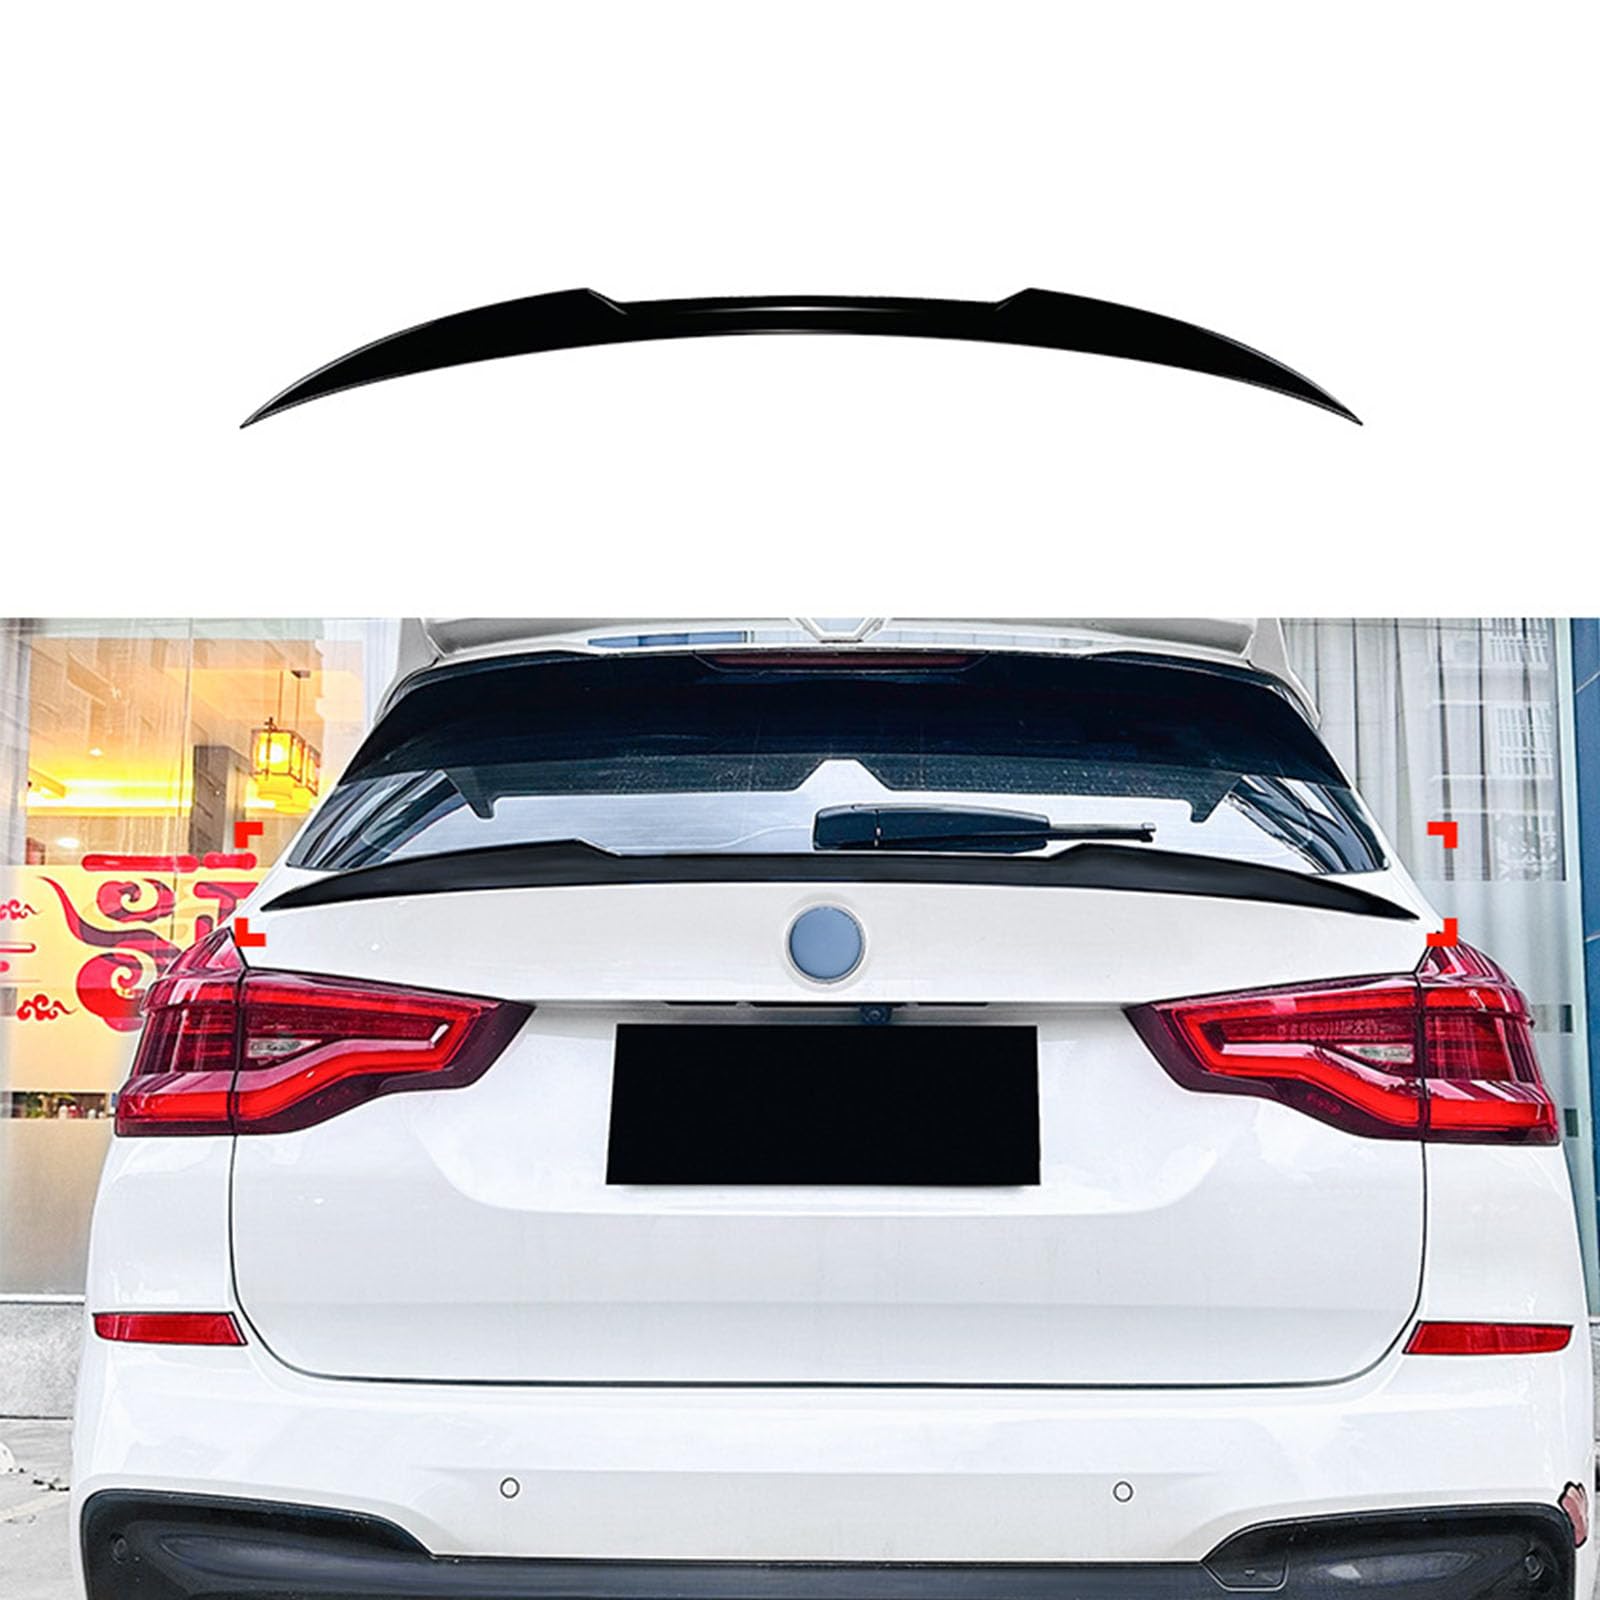 Kompatibel für BMW X3 G01 2018+, Auto Heckflügel Kofferraumspoiler Kofferraum Flügel Lippe Spoiler Bodykits Zubehör,A Gloss Black von YPGHBHD